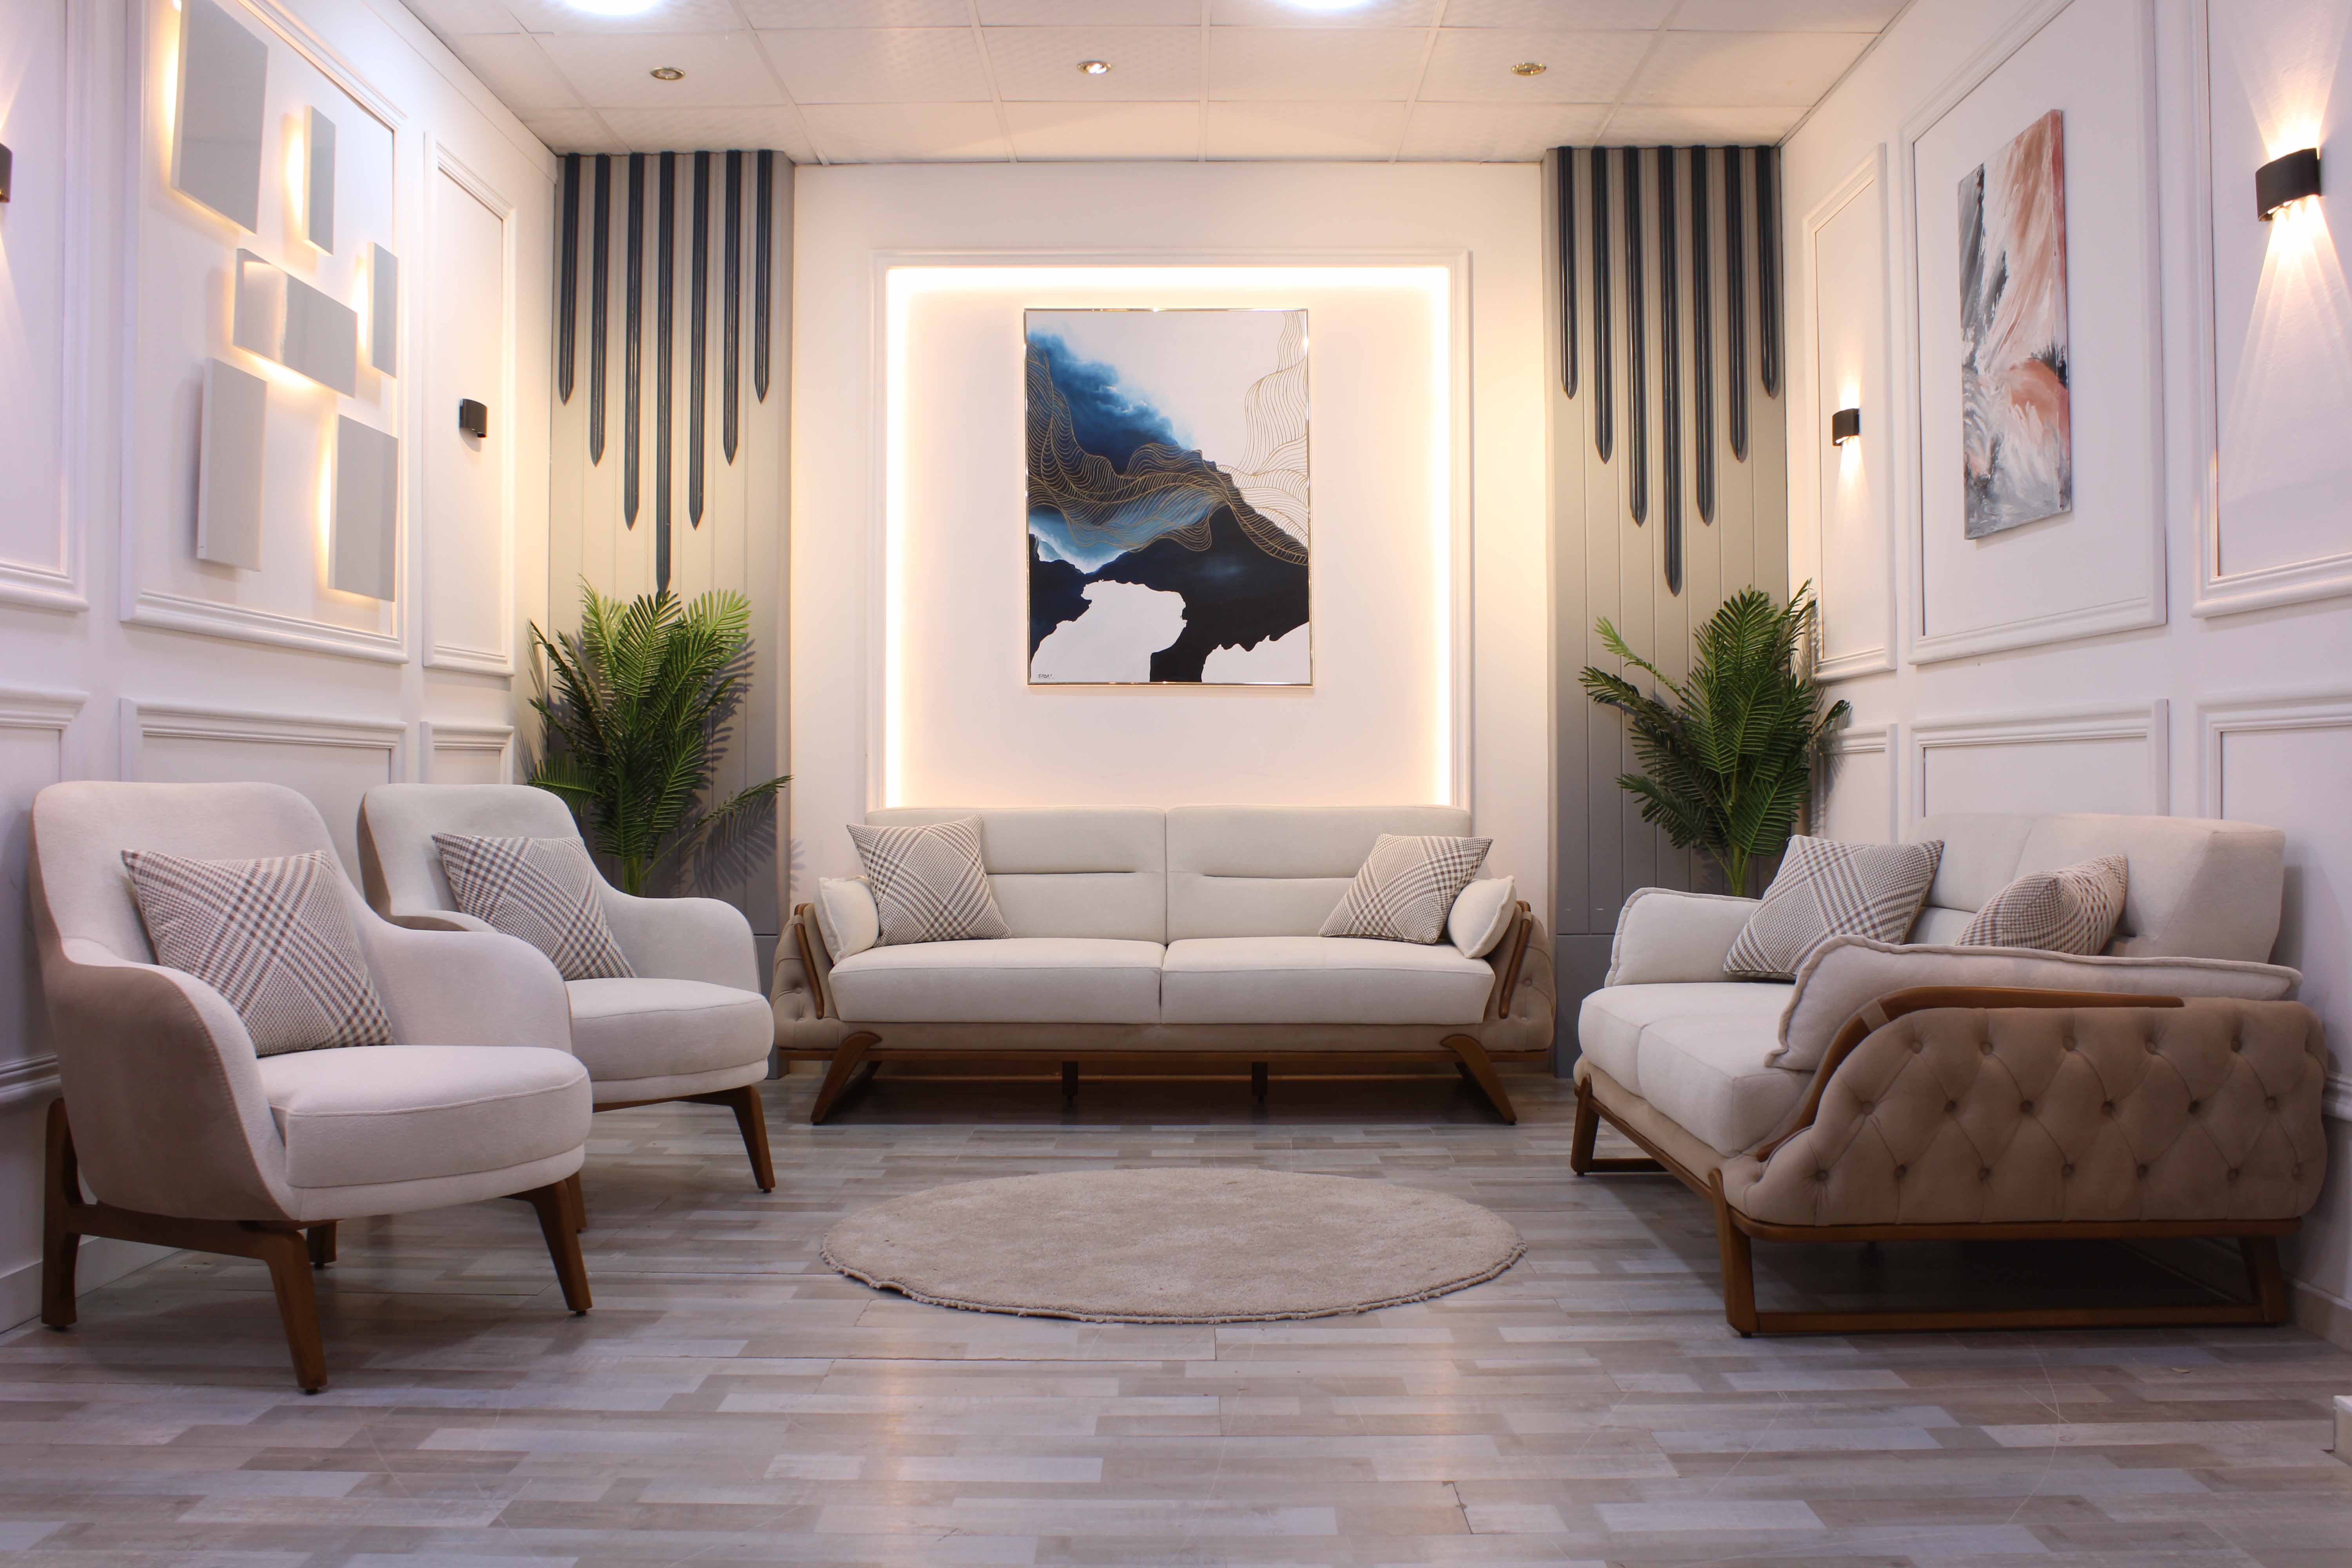 The White Multiplex living room